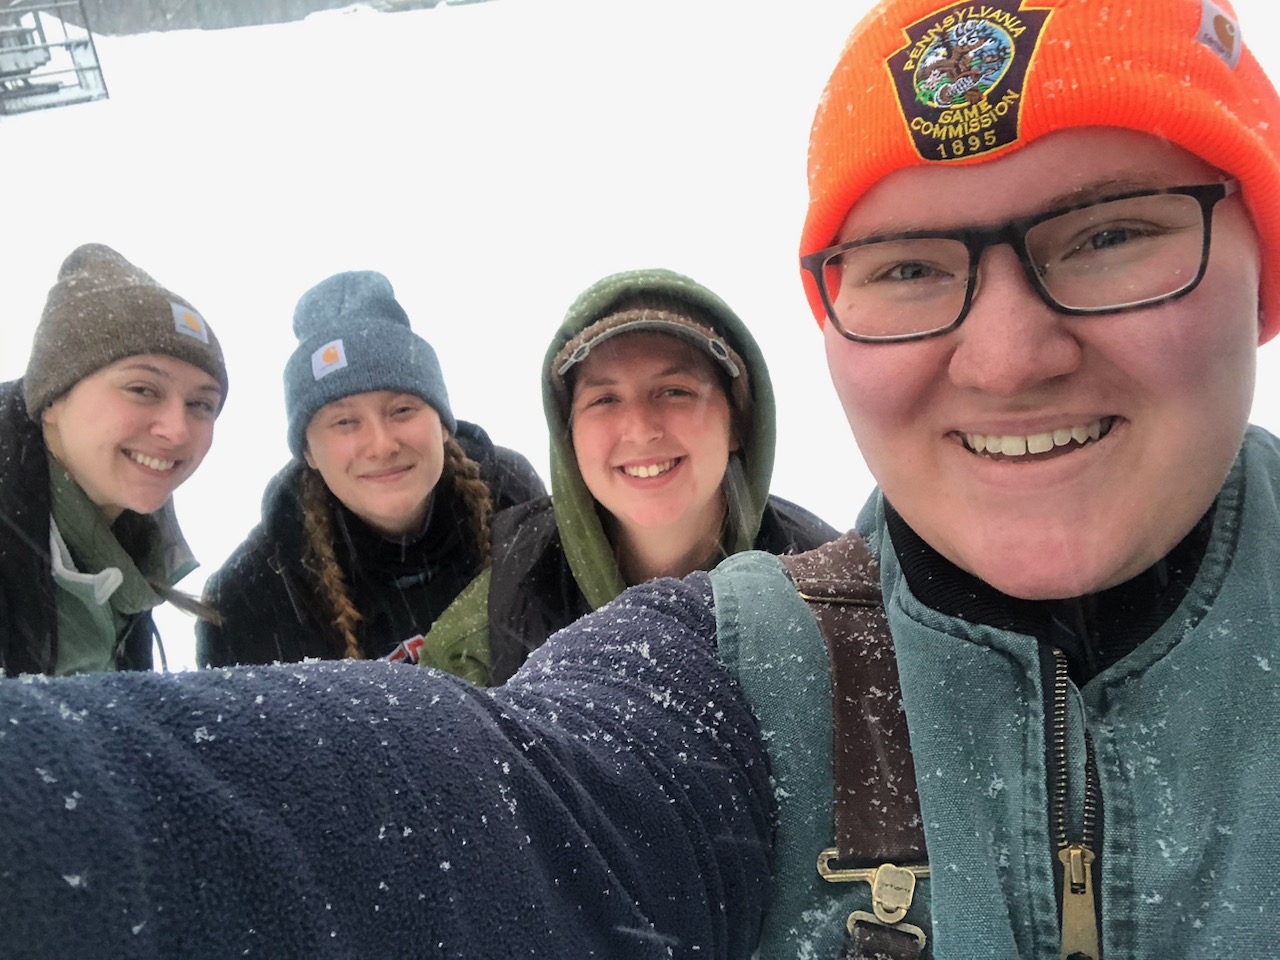 Selfie of crew members in the snow